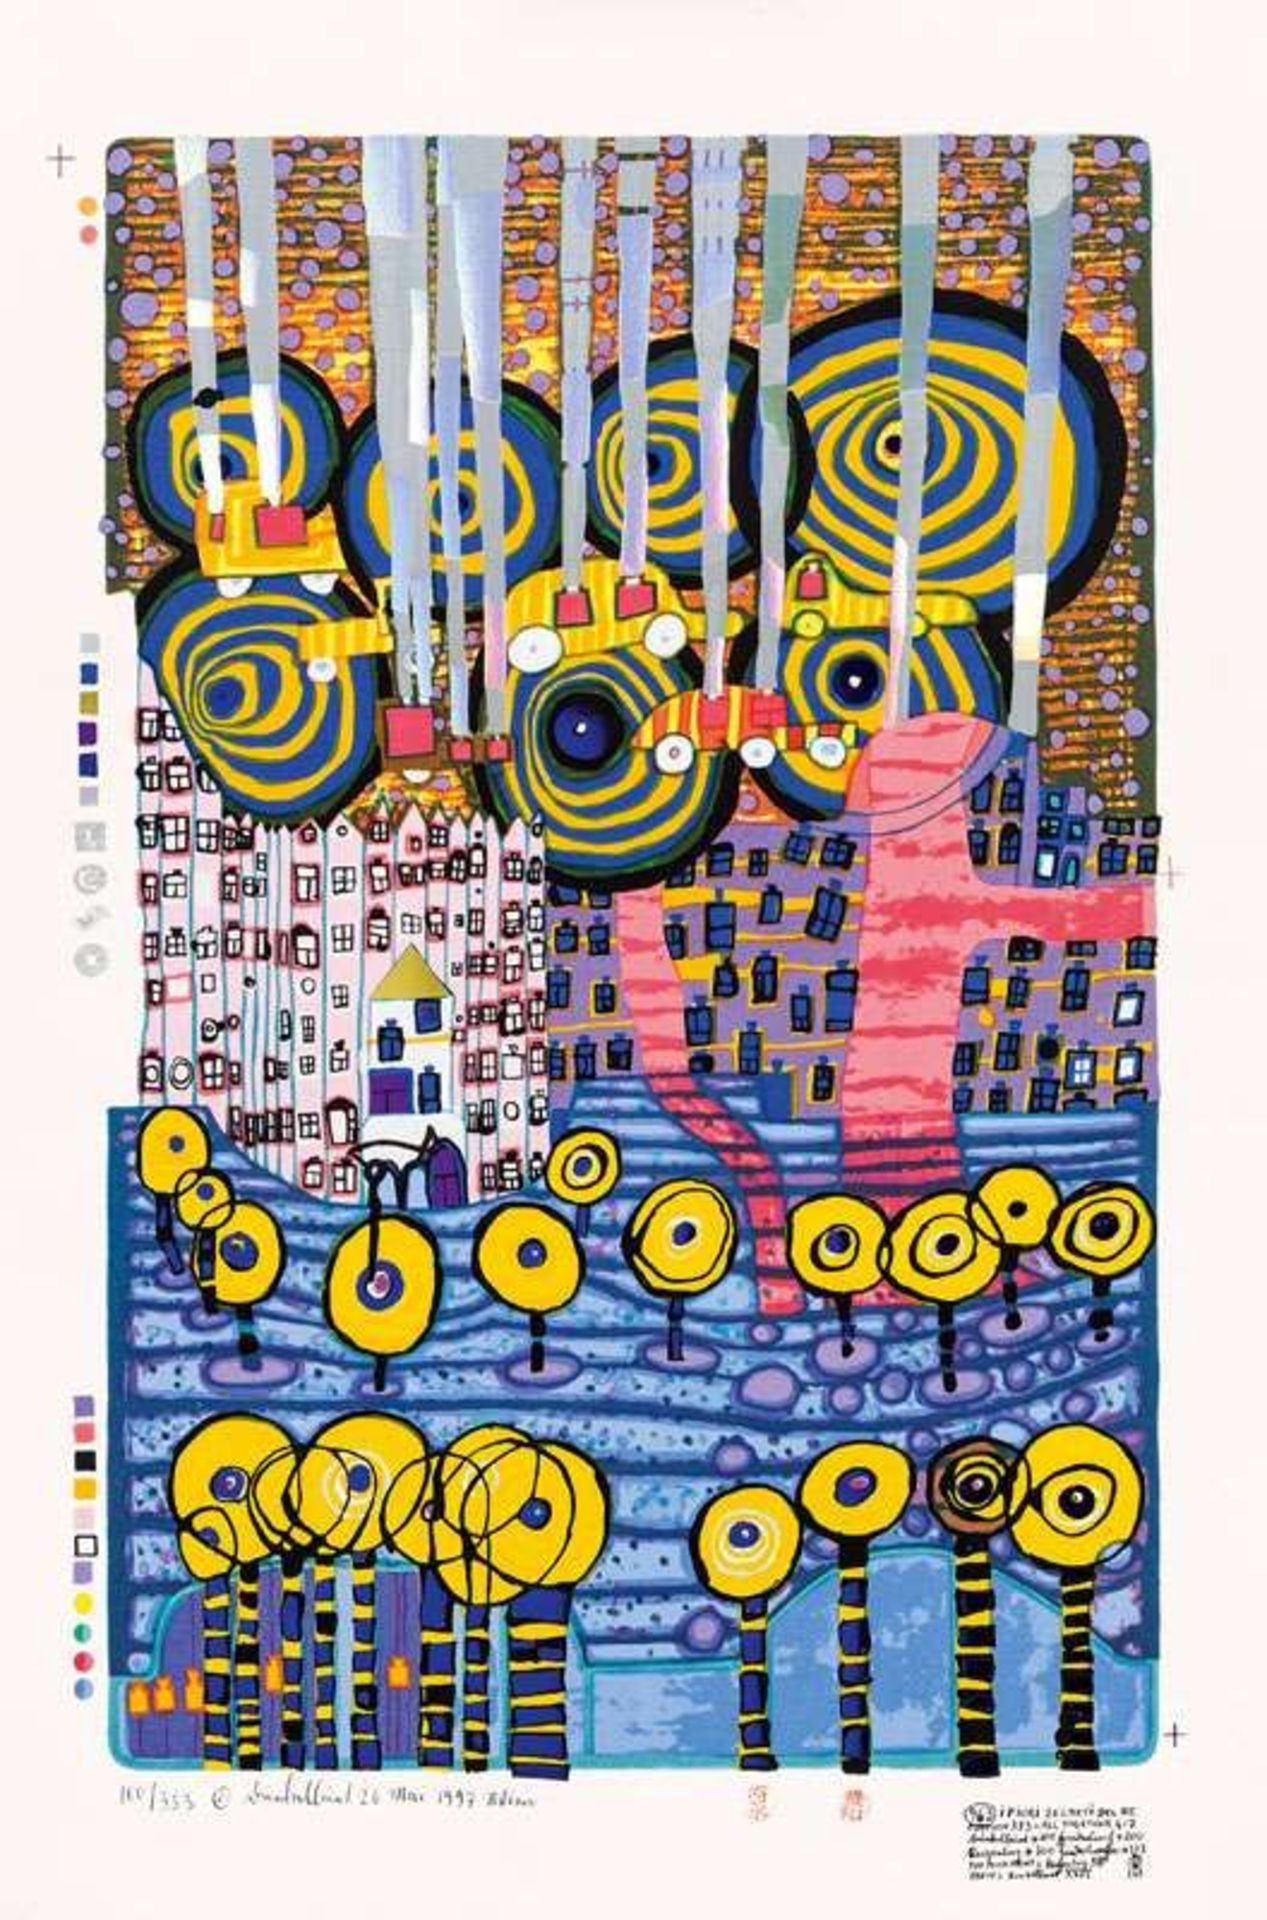 Friedensreich Hundertwasser * 963 I Fiori Segreti Del Rei, HWG 113, Venice, 1997  serigraphy;